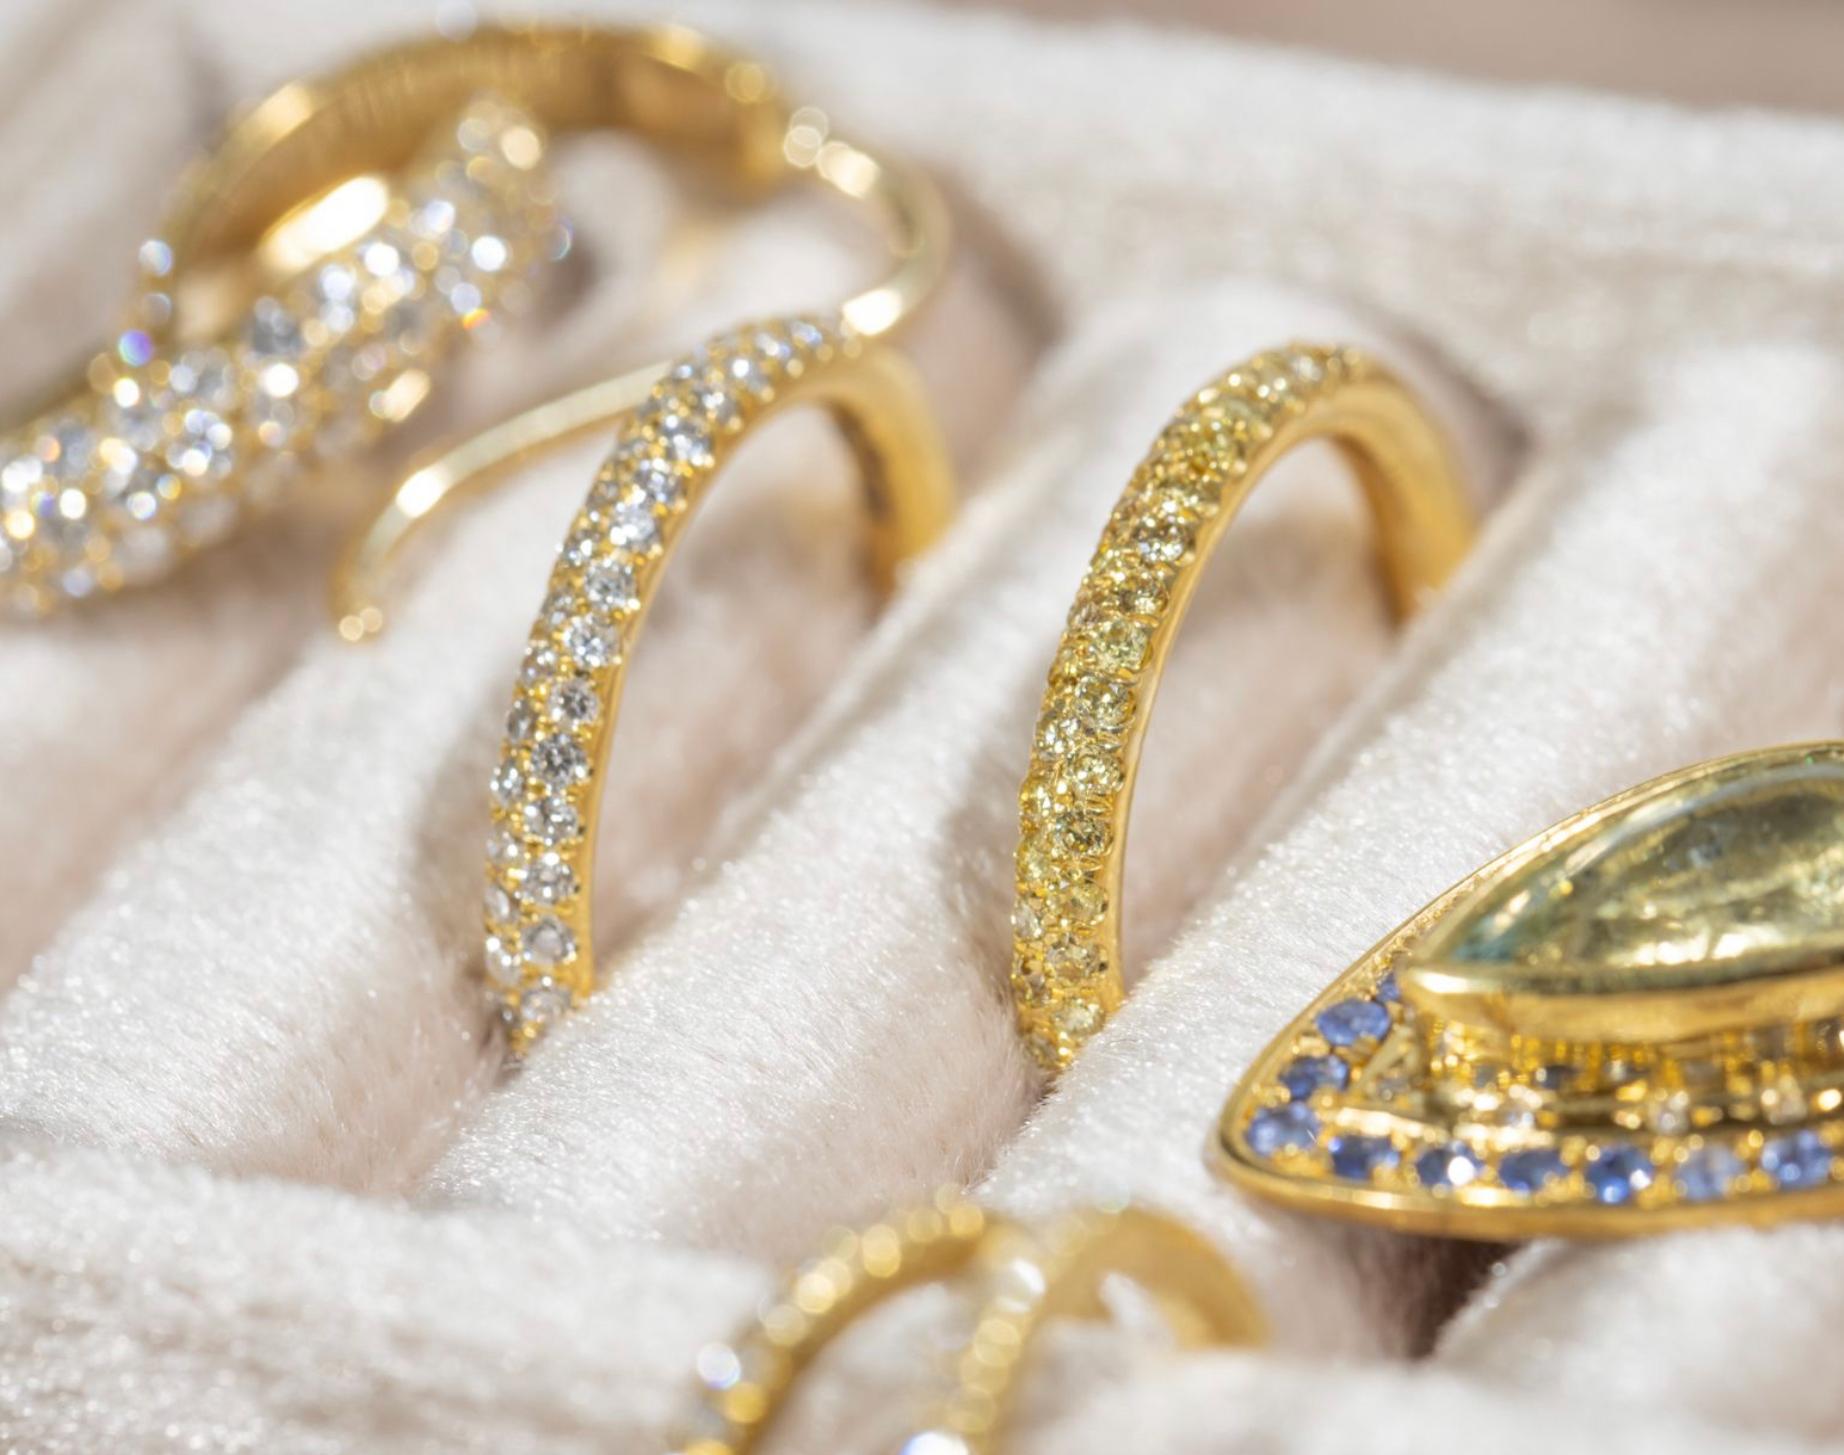 Paris & Lily, bague unique en son genre, faite à la main, en or 22K, pavée de diamants jaunes.  Les diamants pavés jaunes entourent un peu plus de la moitié de l'anneau en fil de fer rond.  Les diamants jaunes brillants totalisent 0,50 carats et